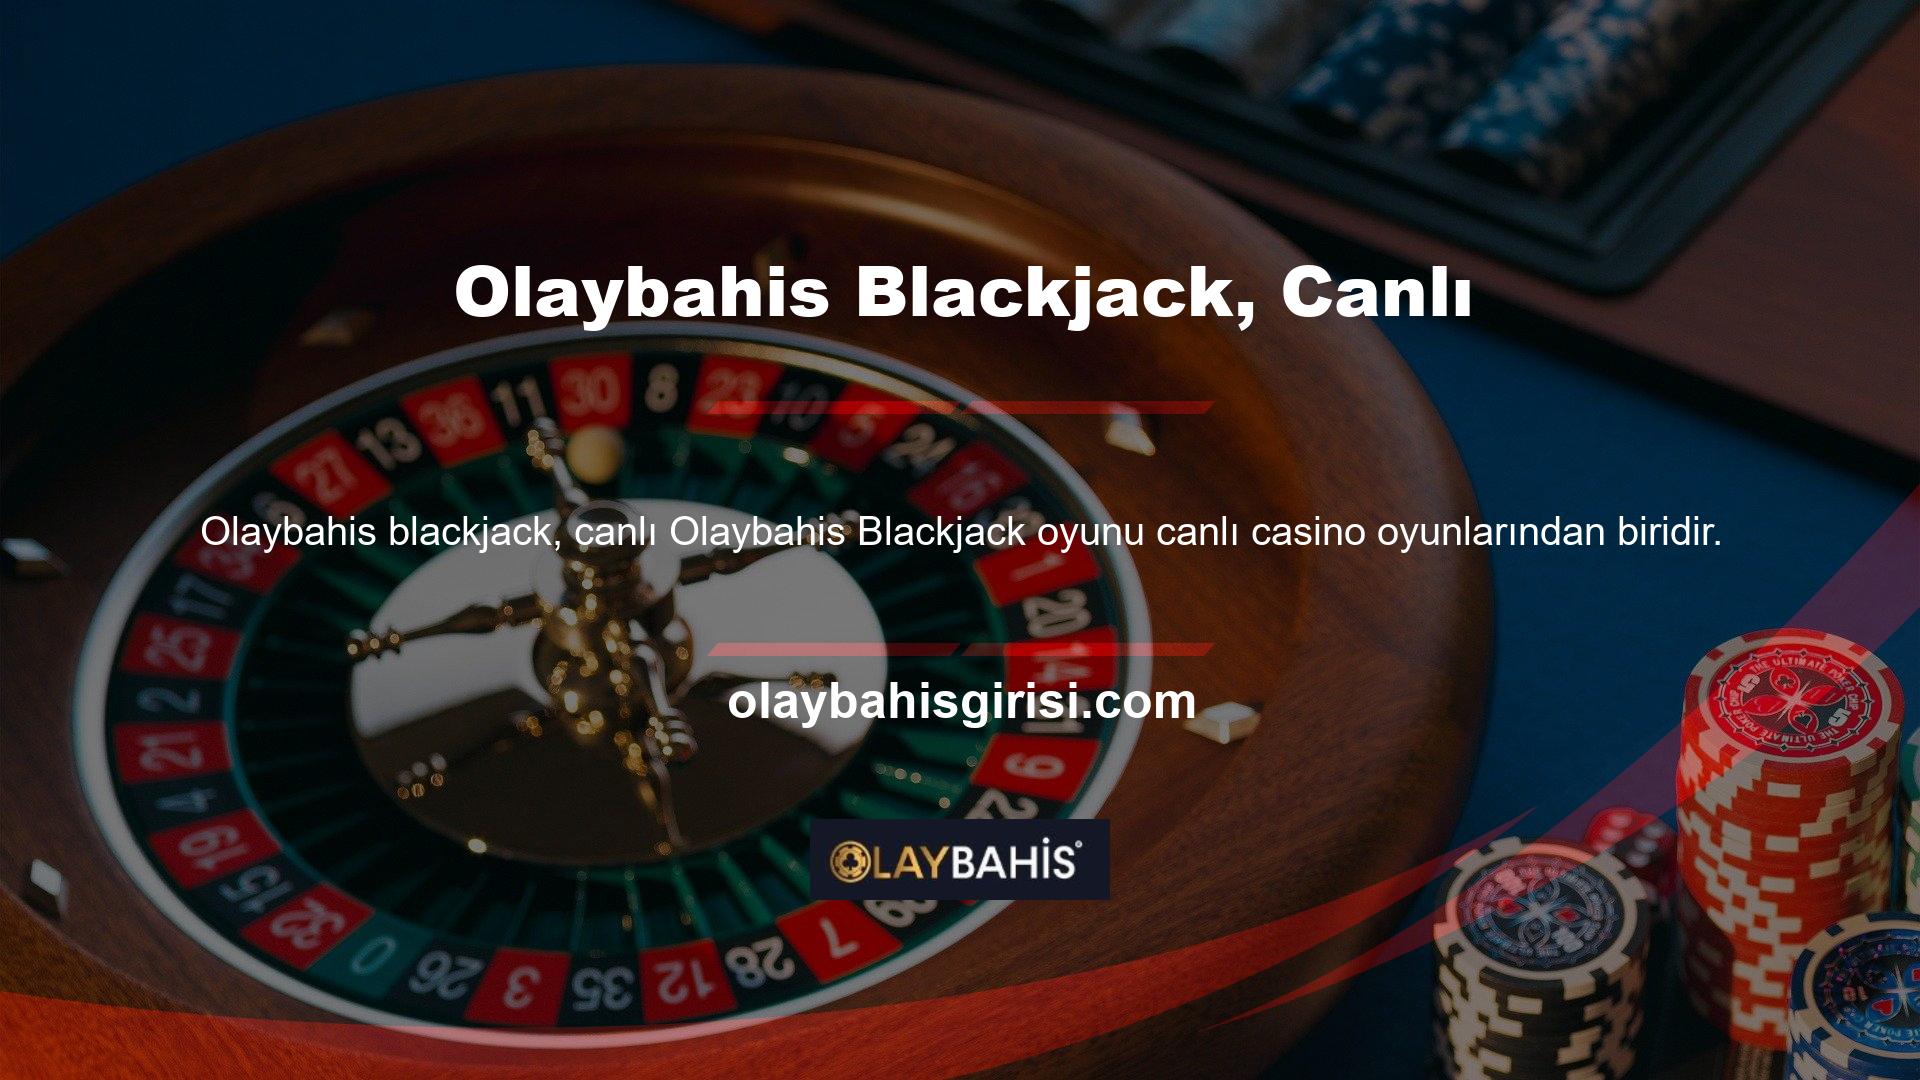 Olaybahis ve Olaybahis gibi günümüzün en popüler casino sitelerinden bazıları, mobil cihazınızda hem canlı hem de çevrimiçi olarak canlı blackjack oynamanıza olanak tanıyor